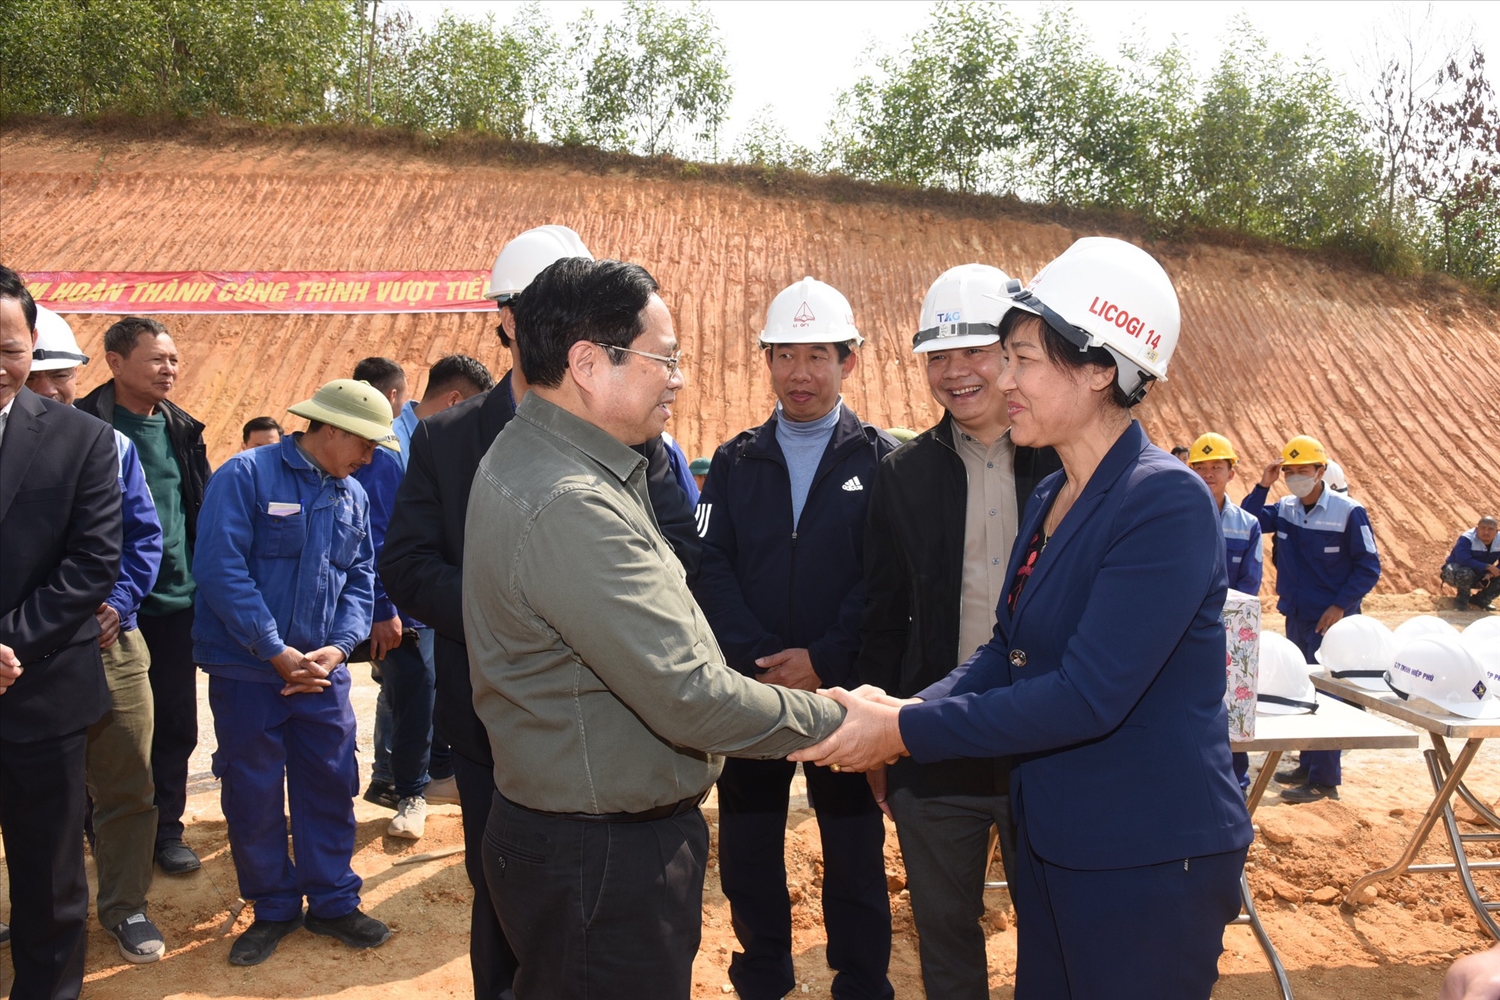 Thủ tướng động viên cán bộ, kỹ sư xây dựng đường cao tốc Tuyên Quang-Phú Thọ đoạn qua tỉnh Tuyên Quang - Ảnh: VGP/Nhật Bắc